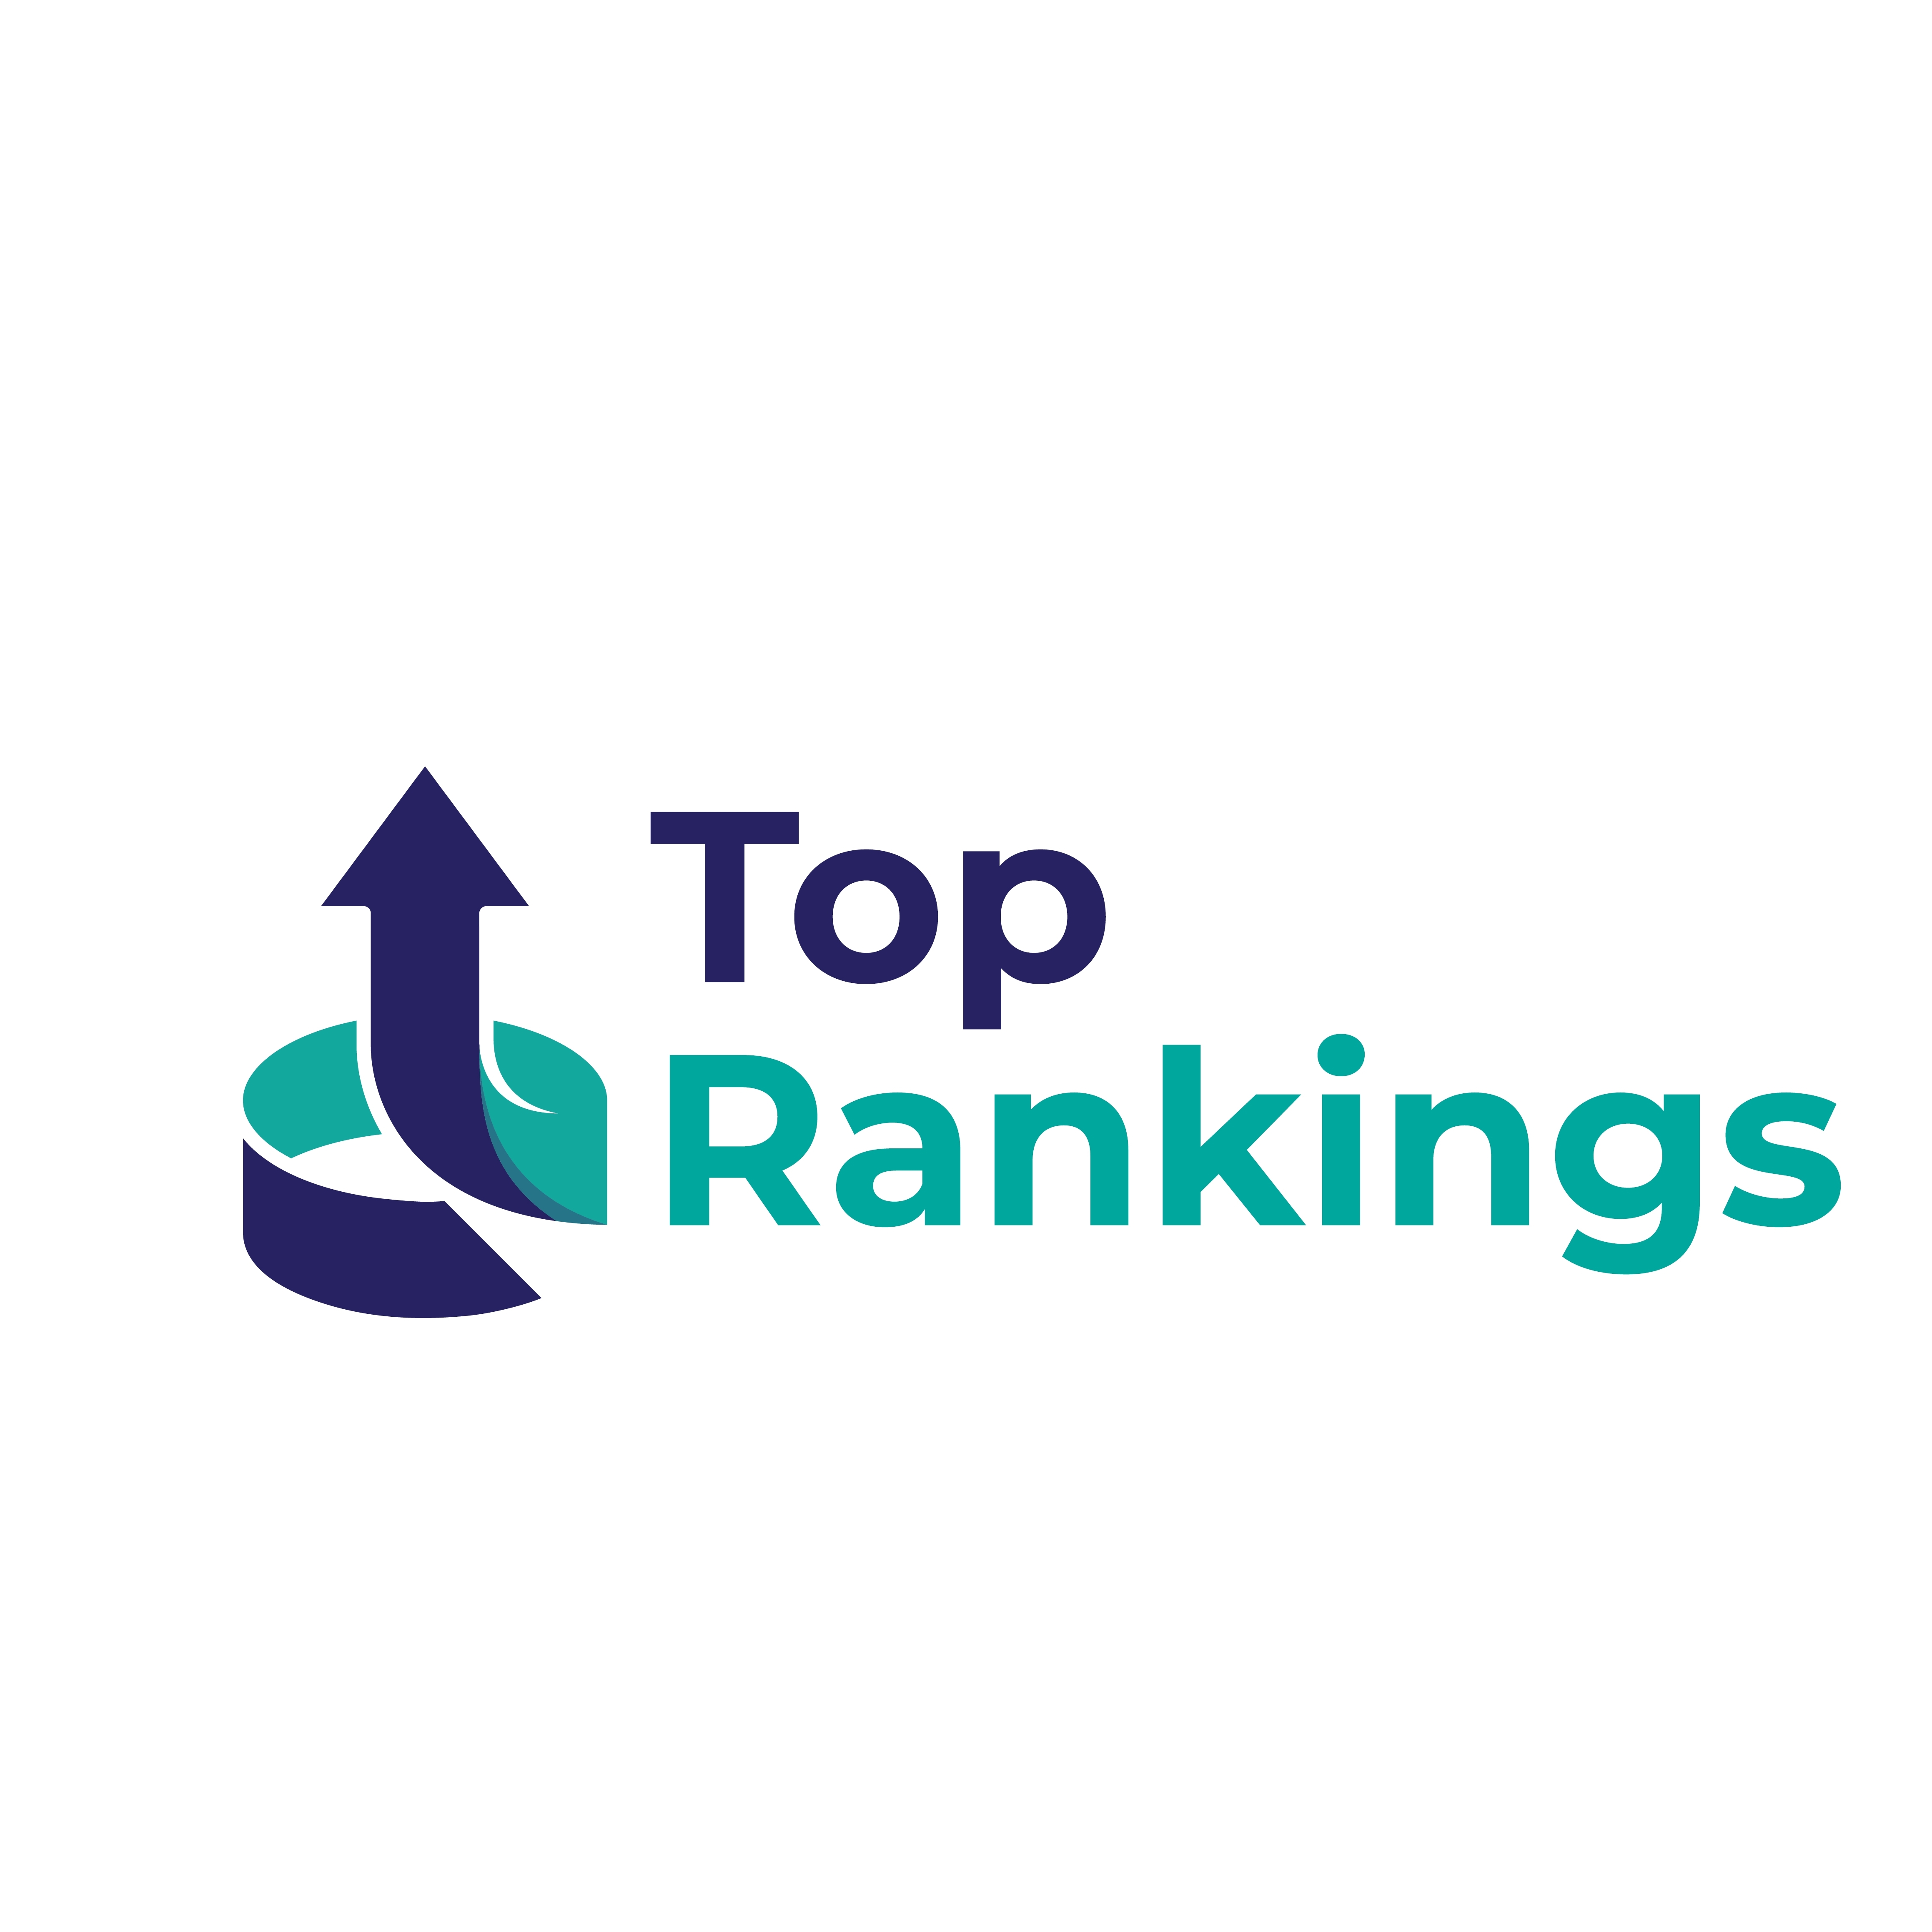 Top Rankings